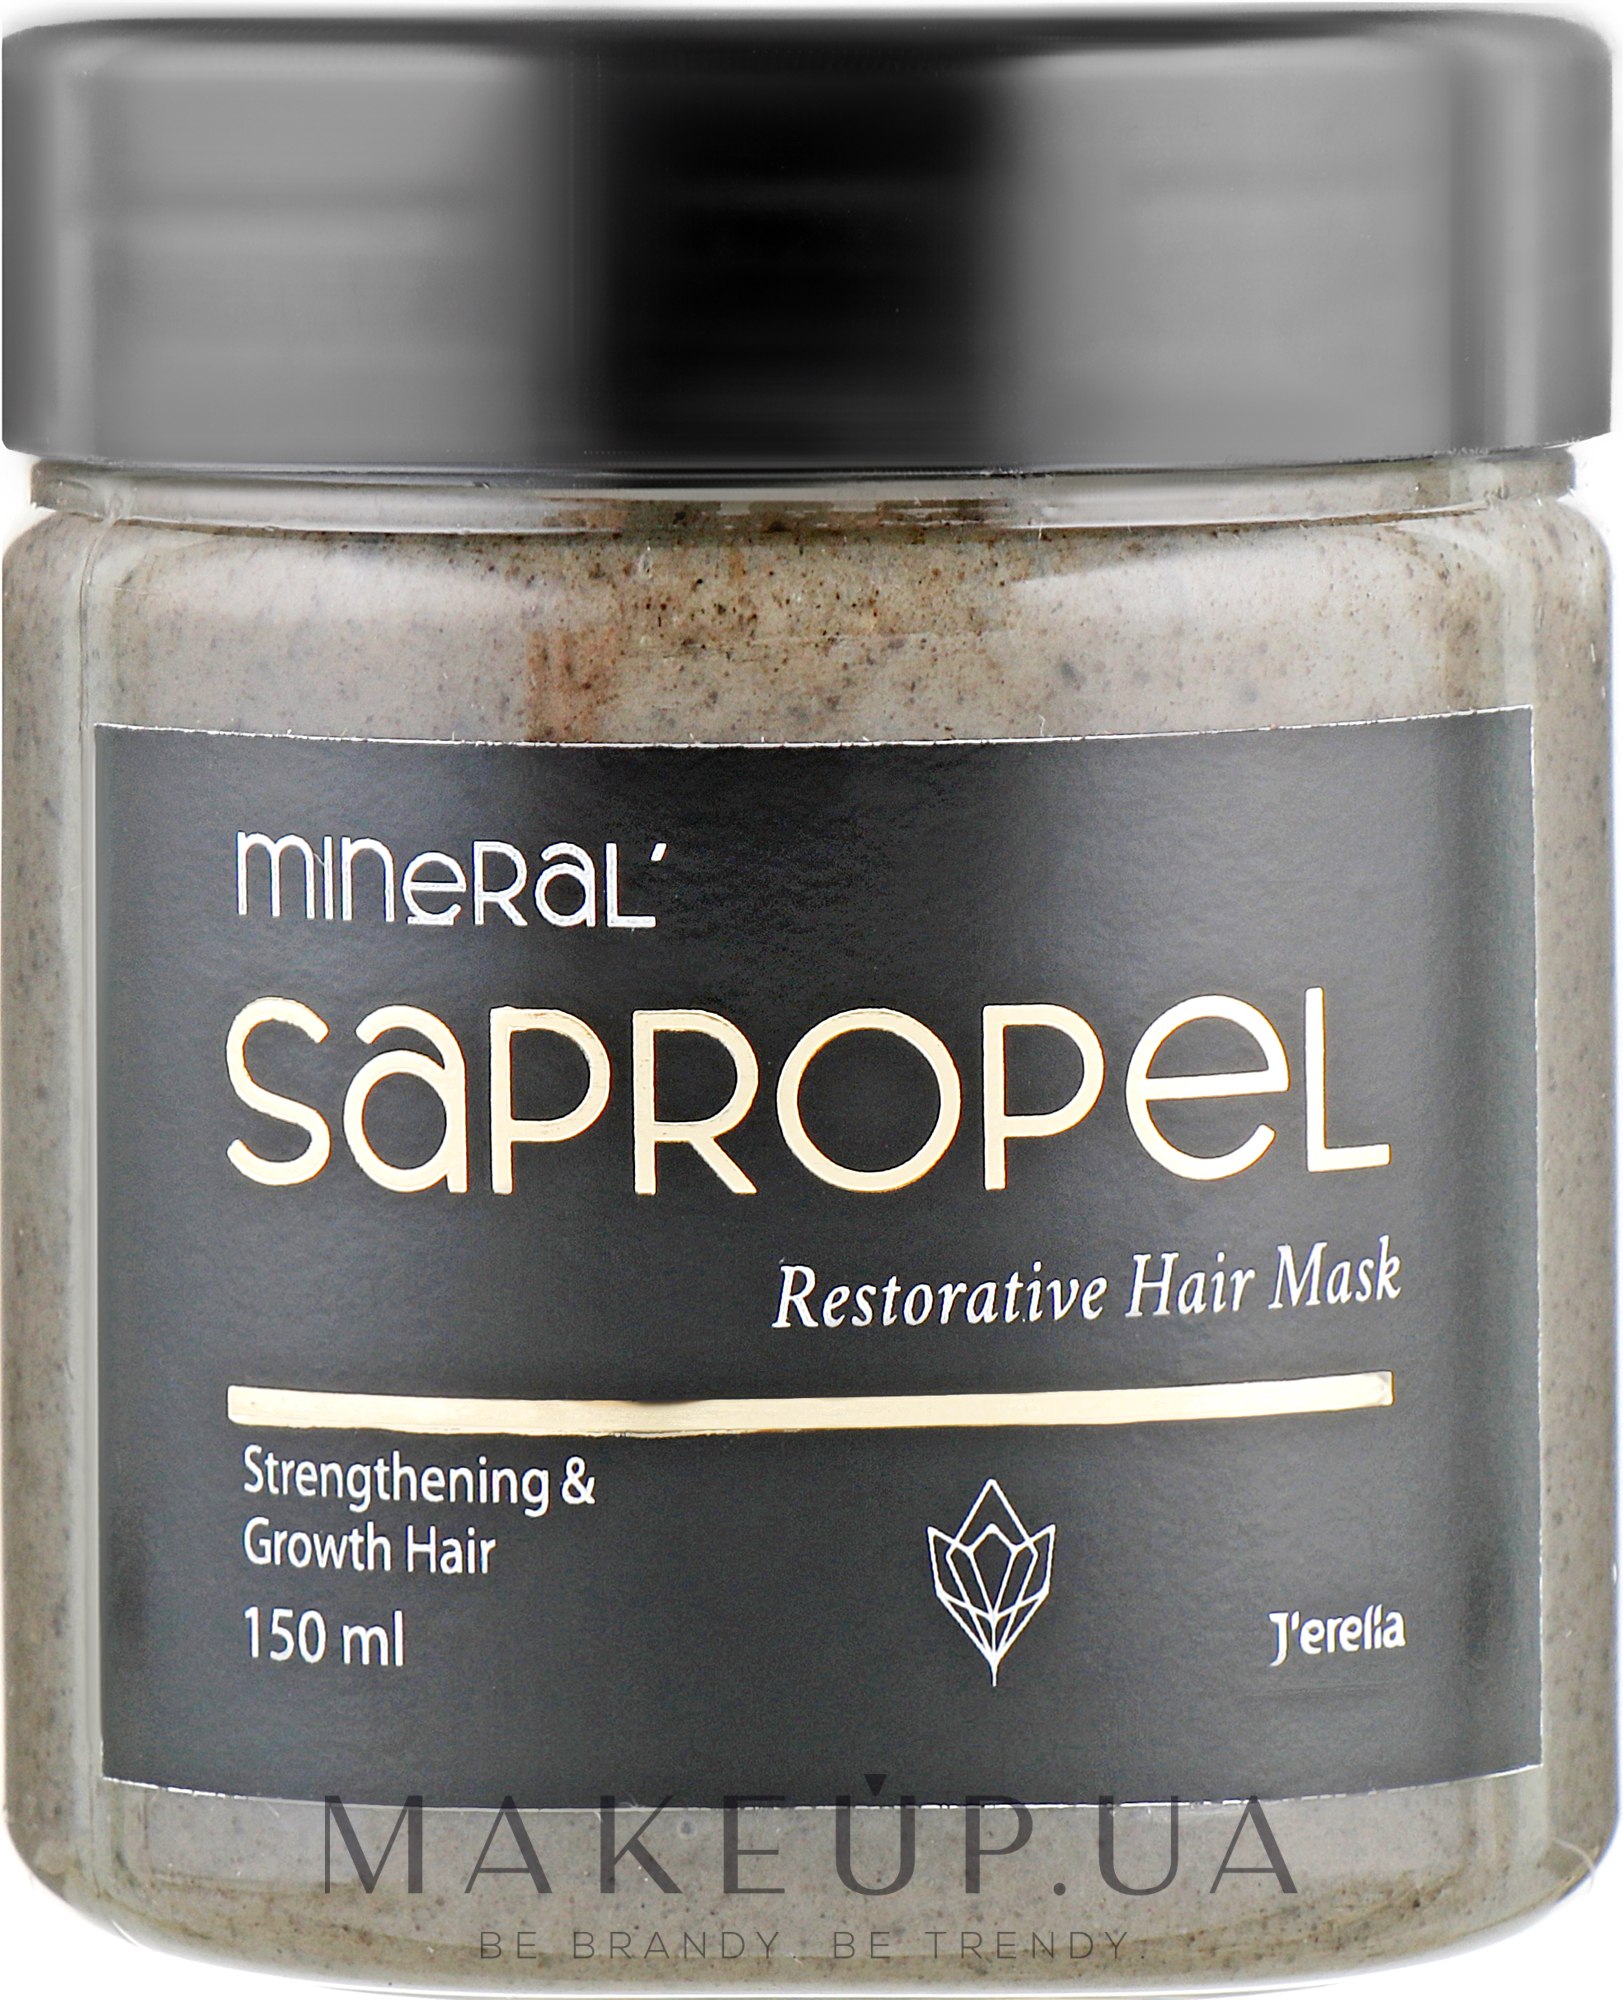 Сапропелевая восстанавливающая маска для укрепления и роста волос - J'erelia Mineral Sapropel Restorative Hair Mask — фото 150ml